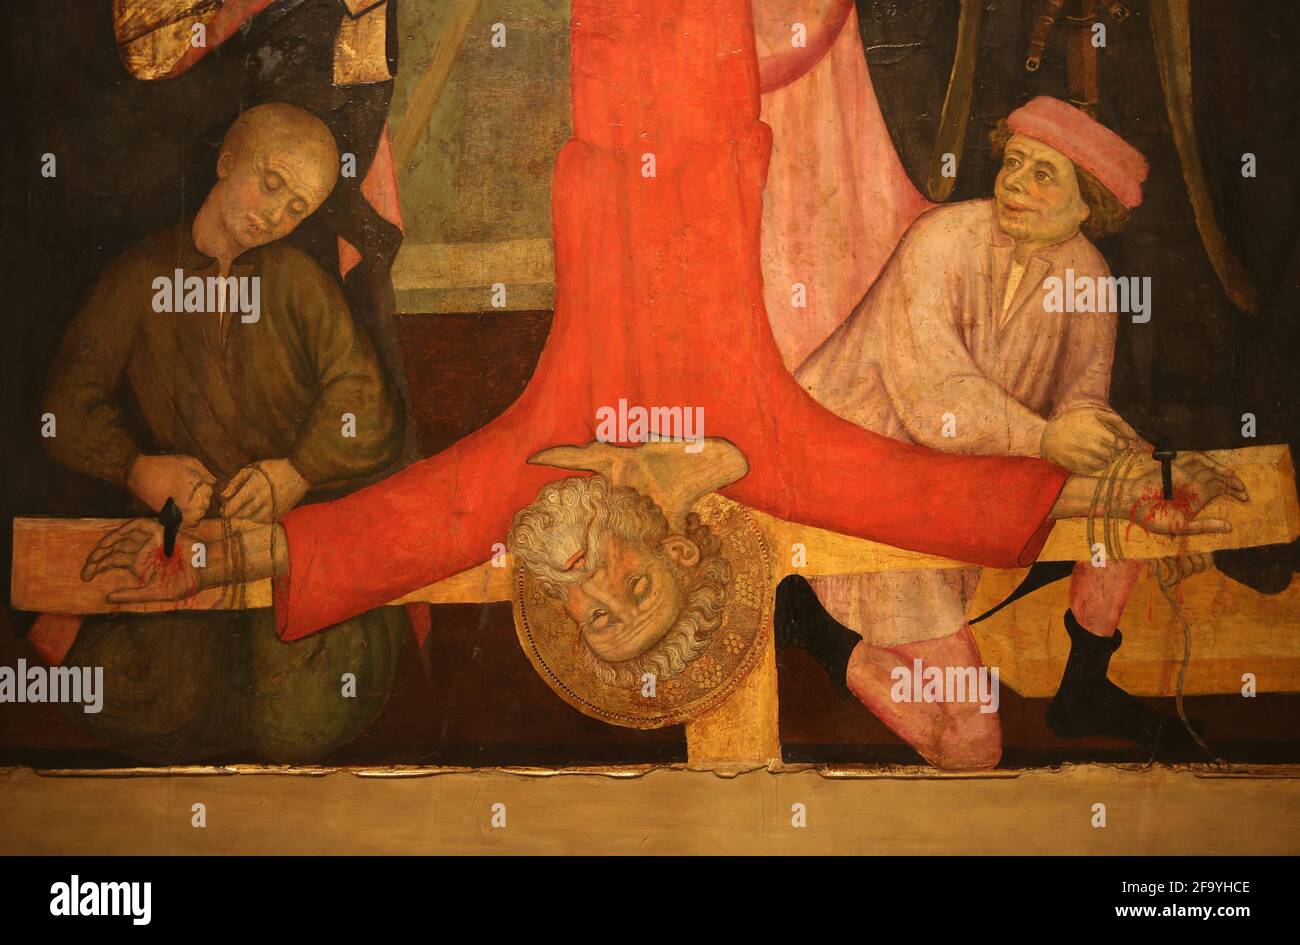 Kreuzigung des heiligen Petrus, von Pere Serra . um 1400. Von der Kirche St. Pere de Cubells, Katalonien.Nationales Kunstmuseum von Katalonien. Barcelona. Catalon Stockfoto